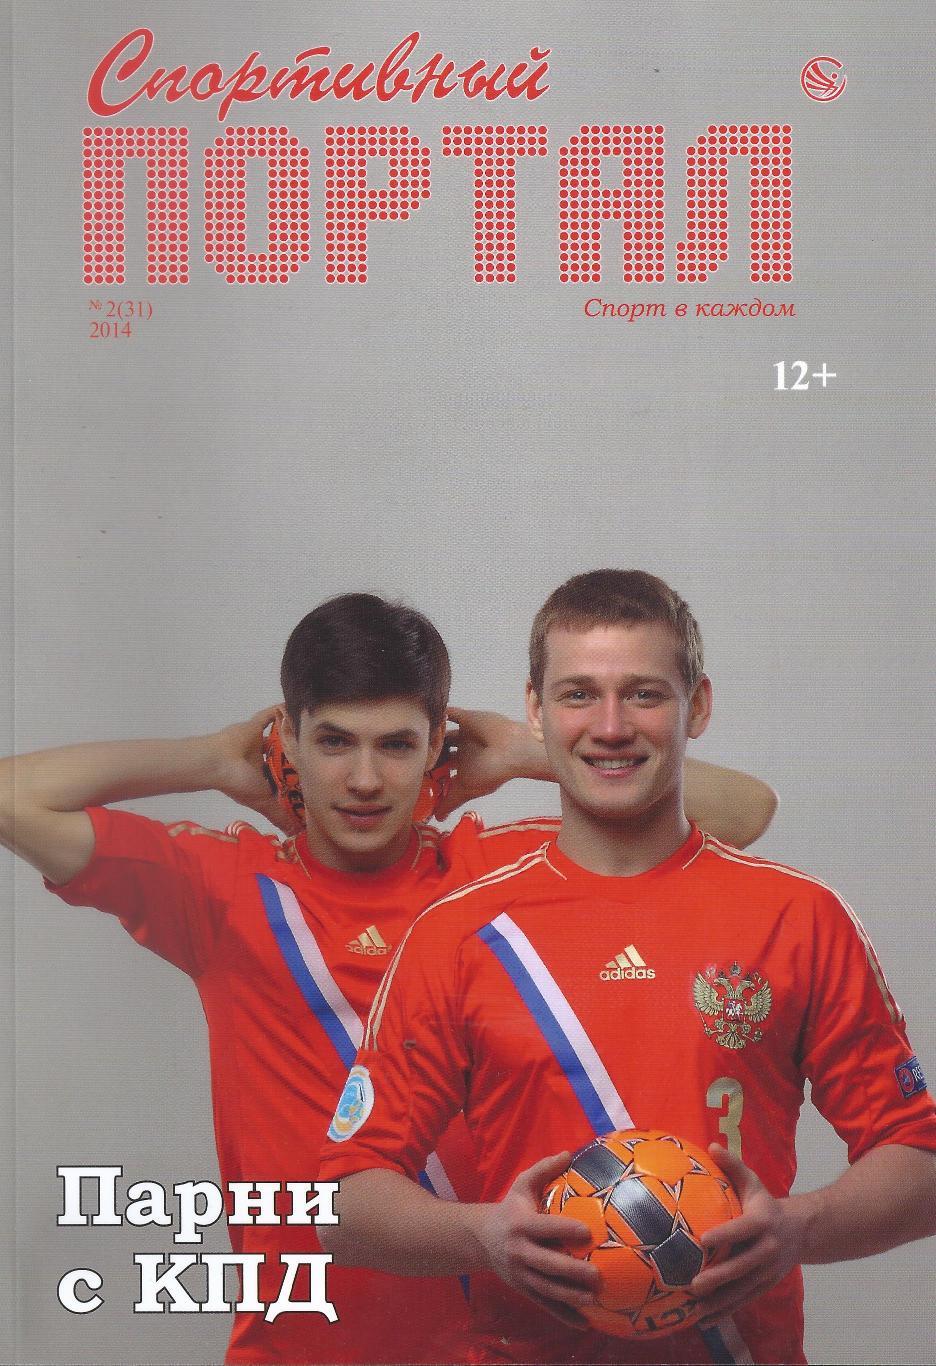 Спортивный портал- №5(34) - 2014 год